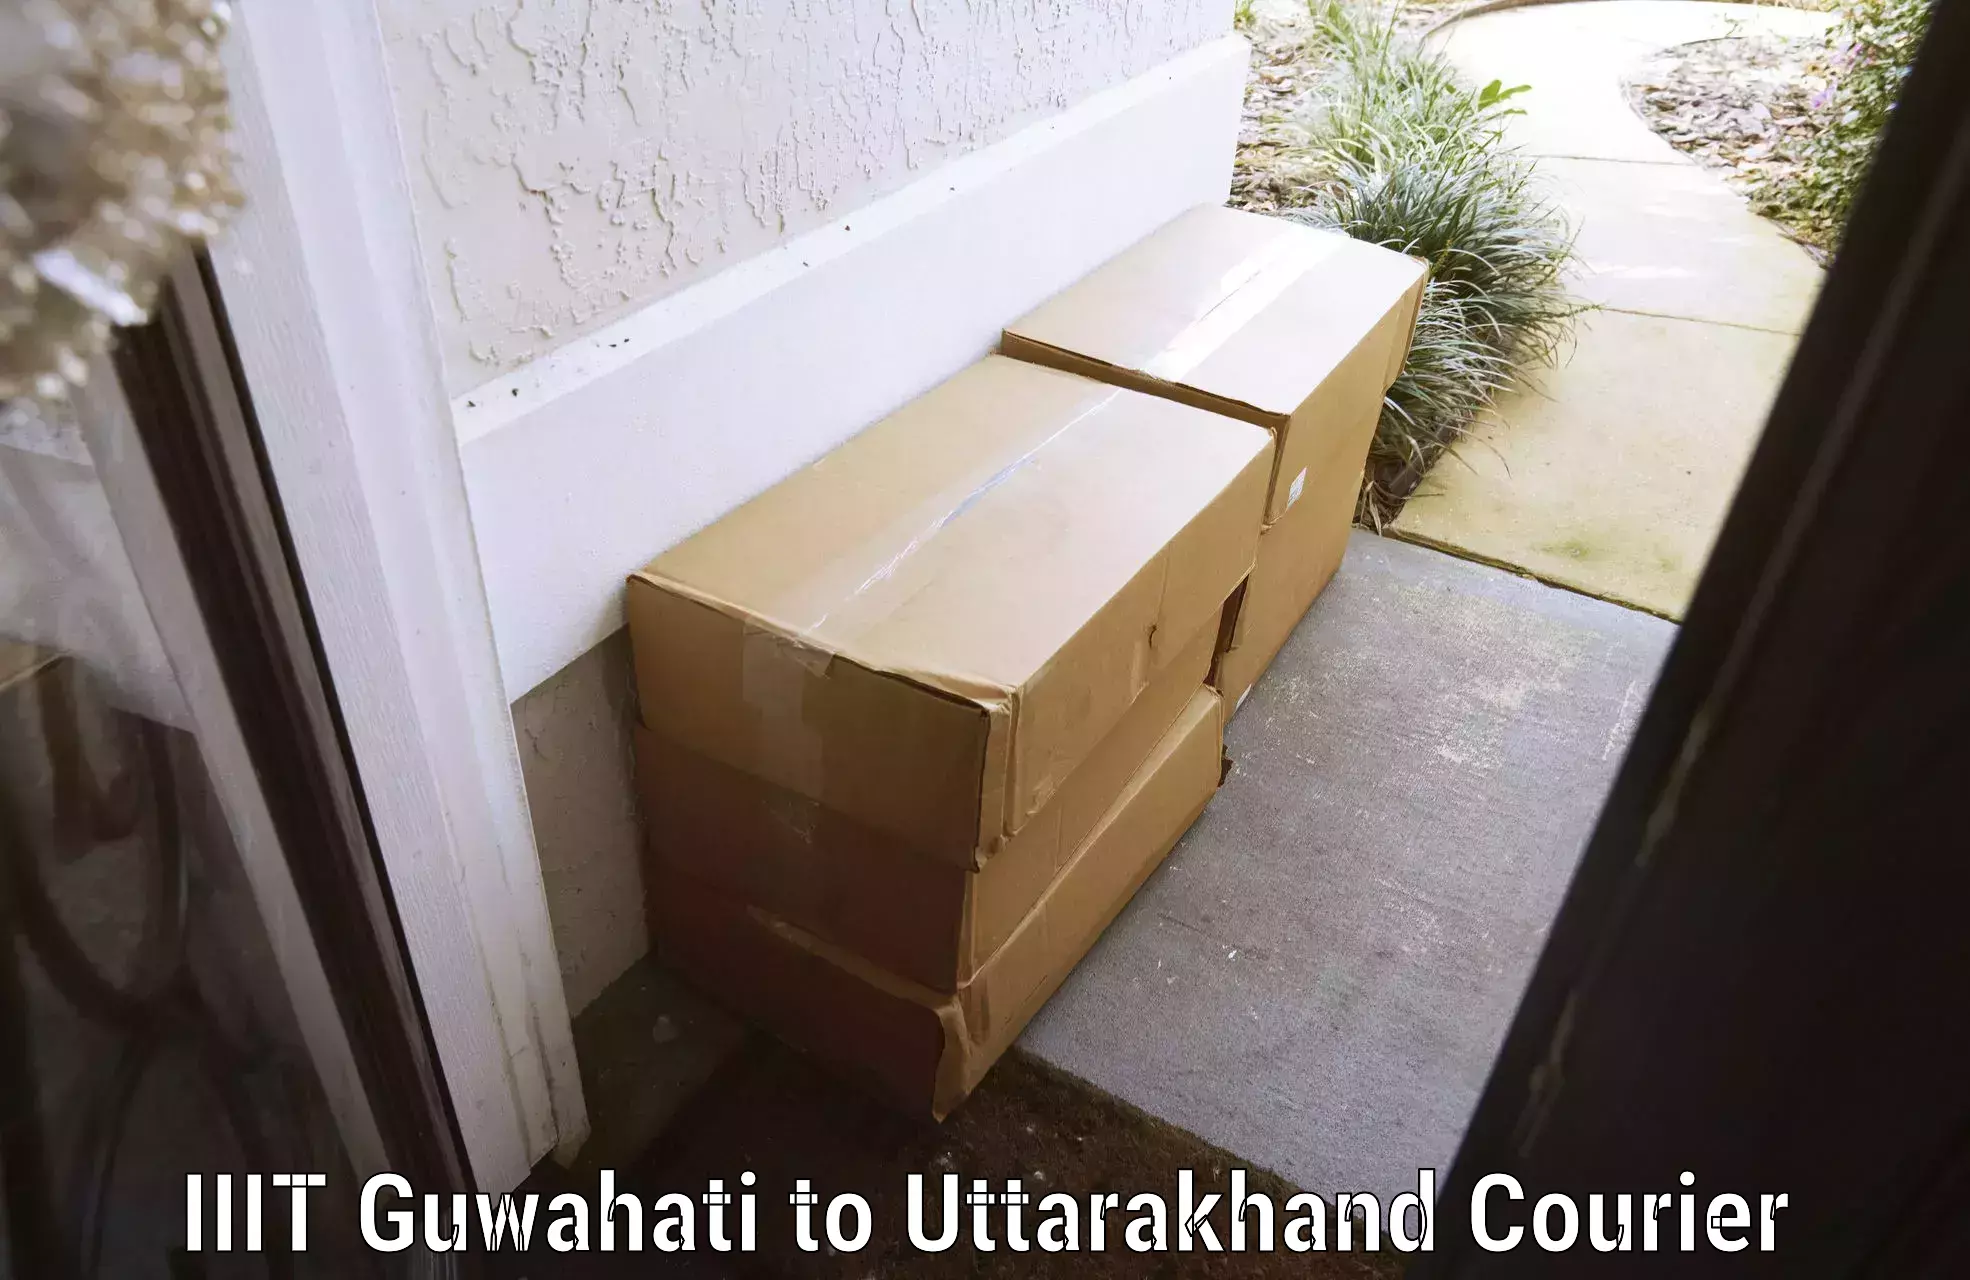 Baggage courier insights IIIT Guwahati to IIT Roorkee